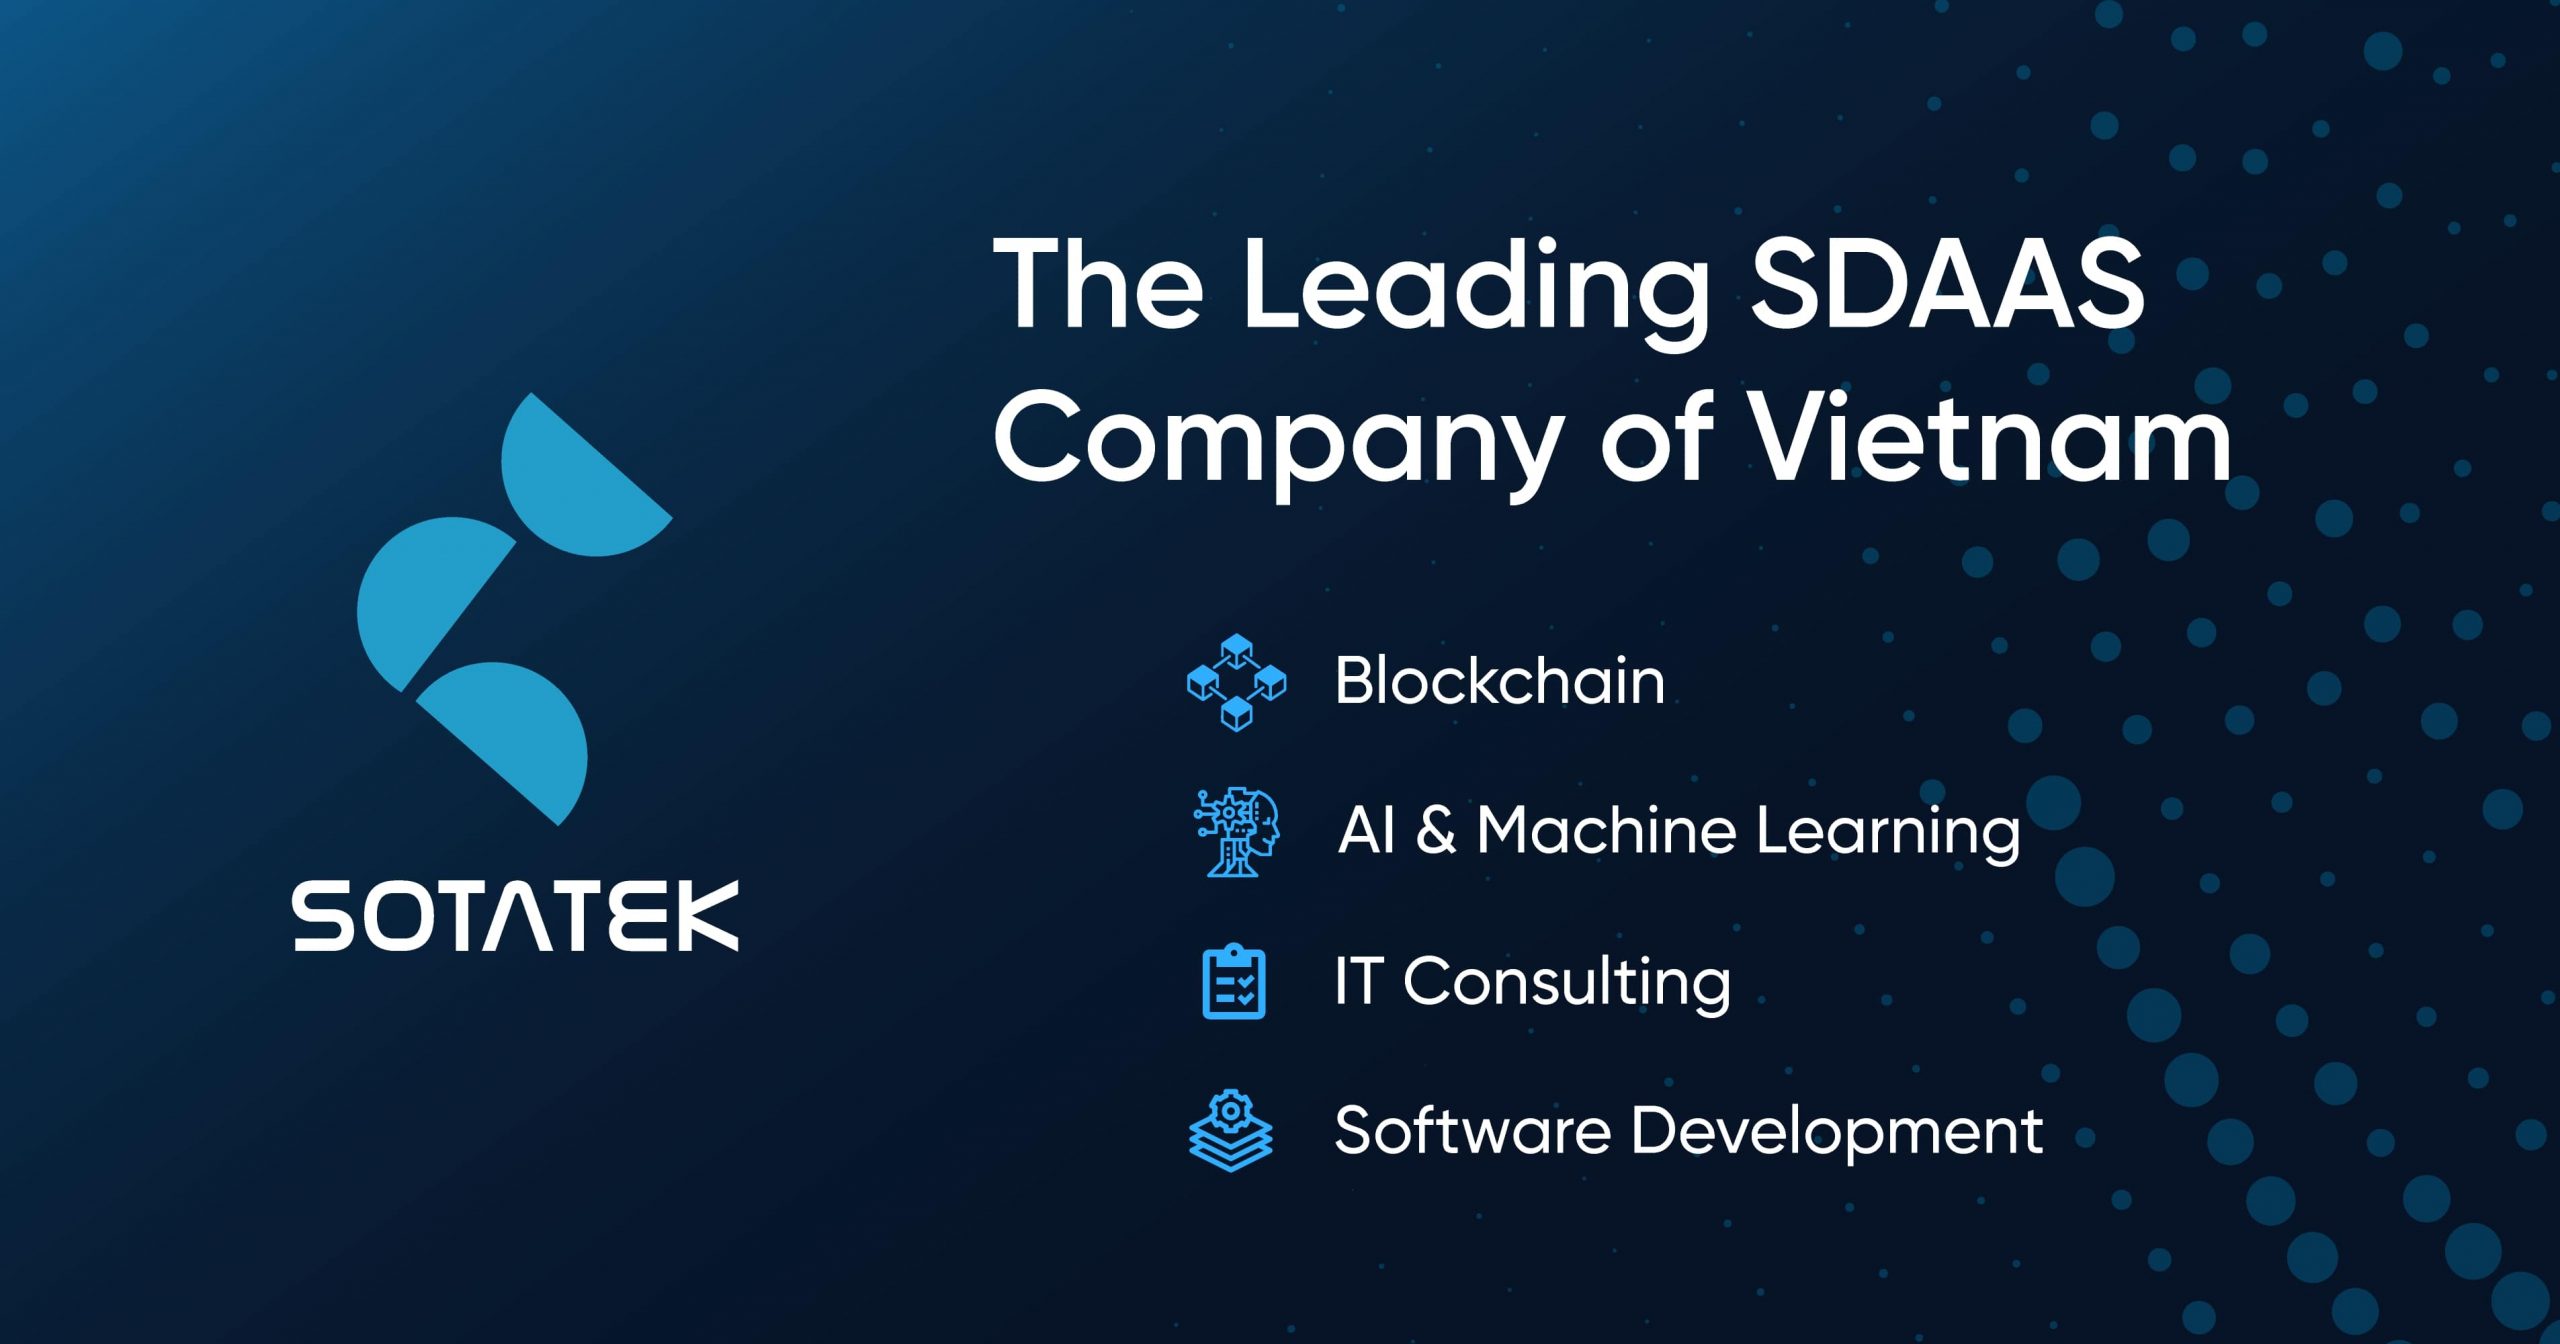 SotaTek is the Top Blockchain Company in Vietnam